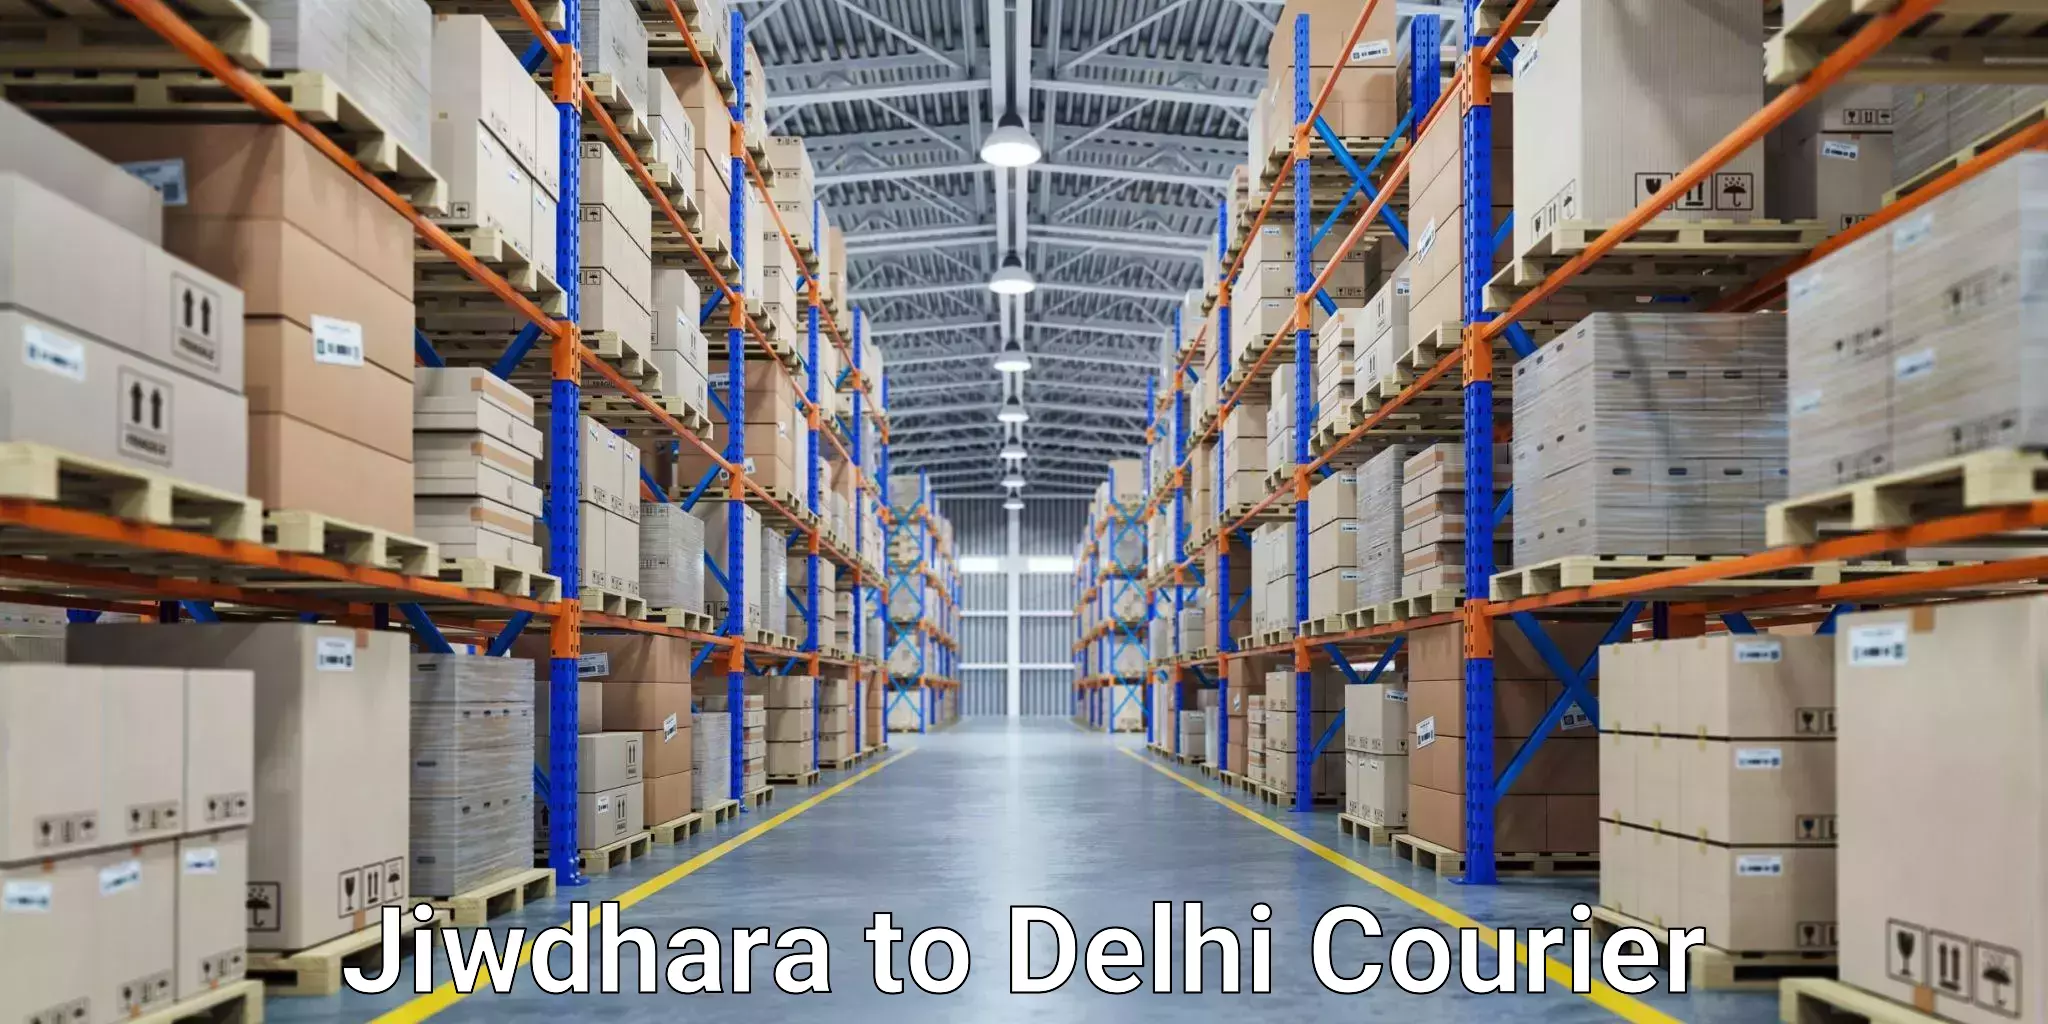 Reliable shipping partners Jiwdhara to Delhi